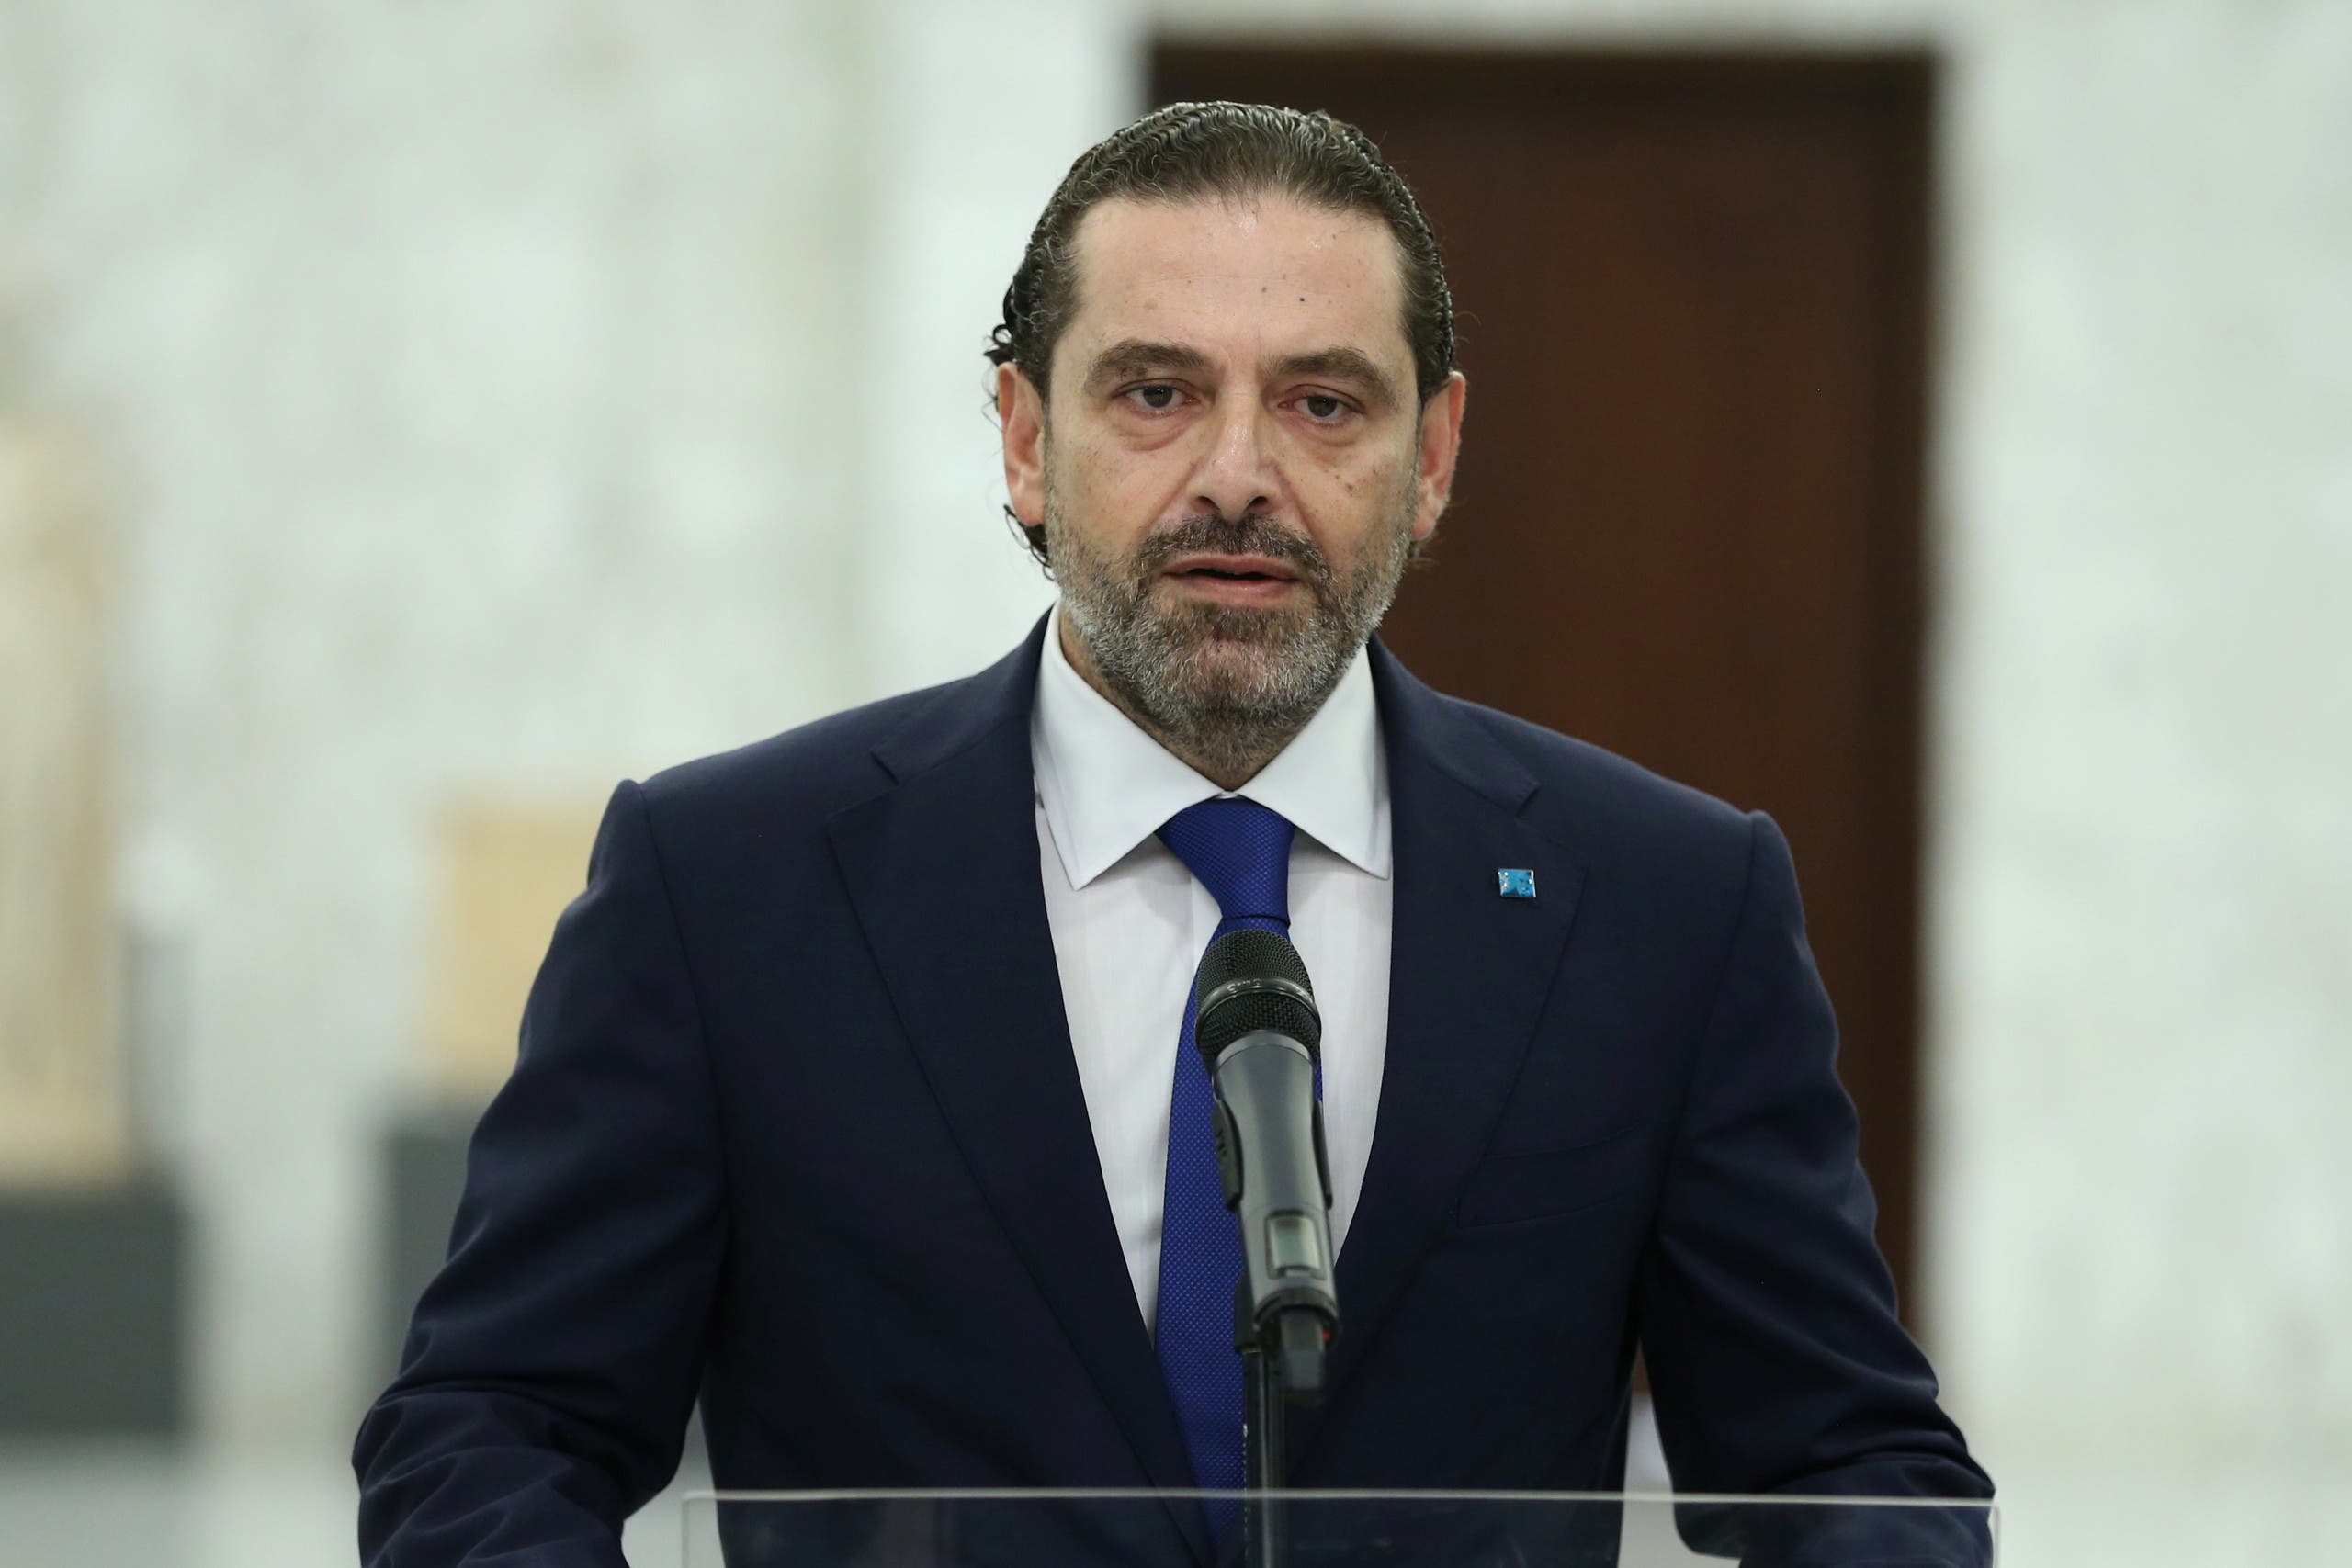 Saad Hariri (file photo from Reuters)